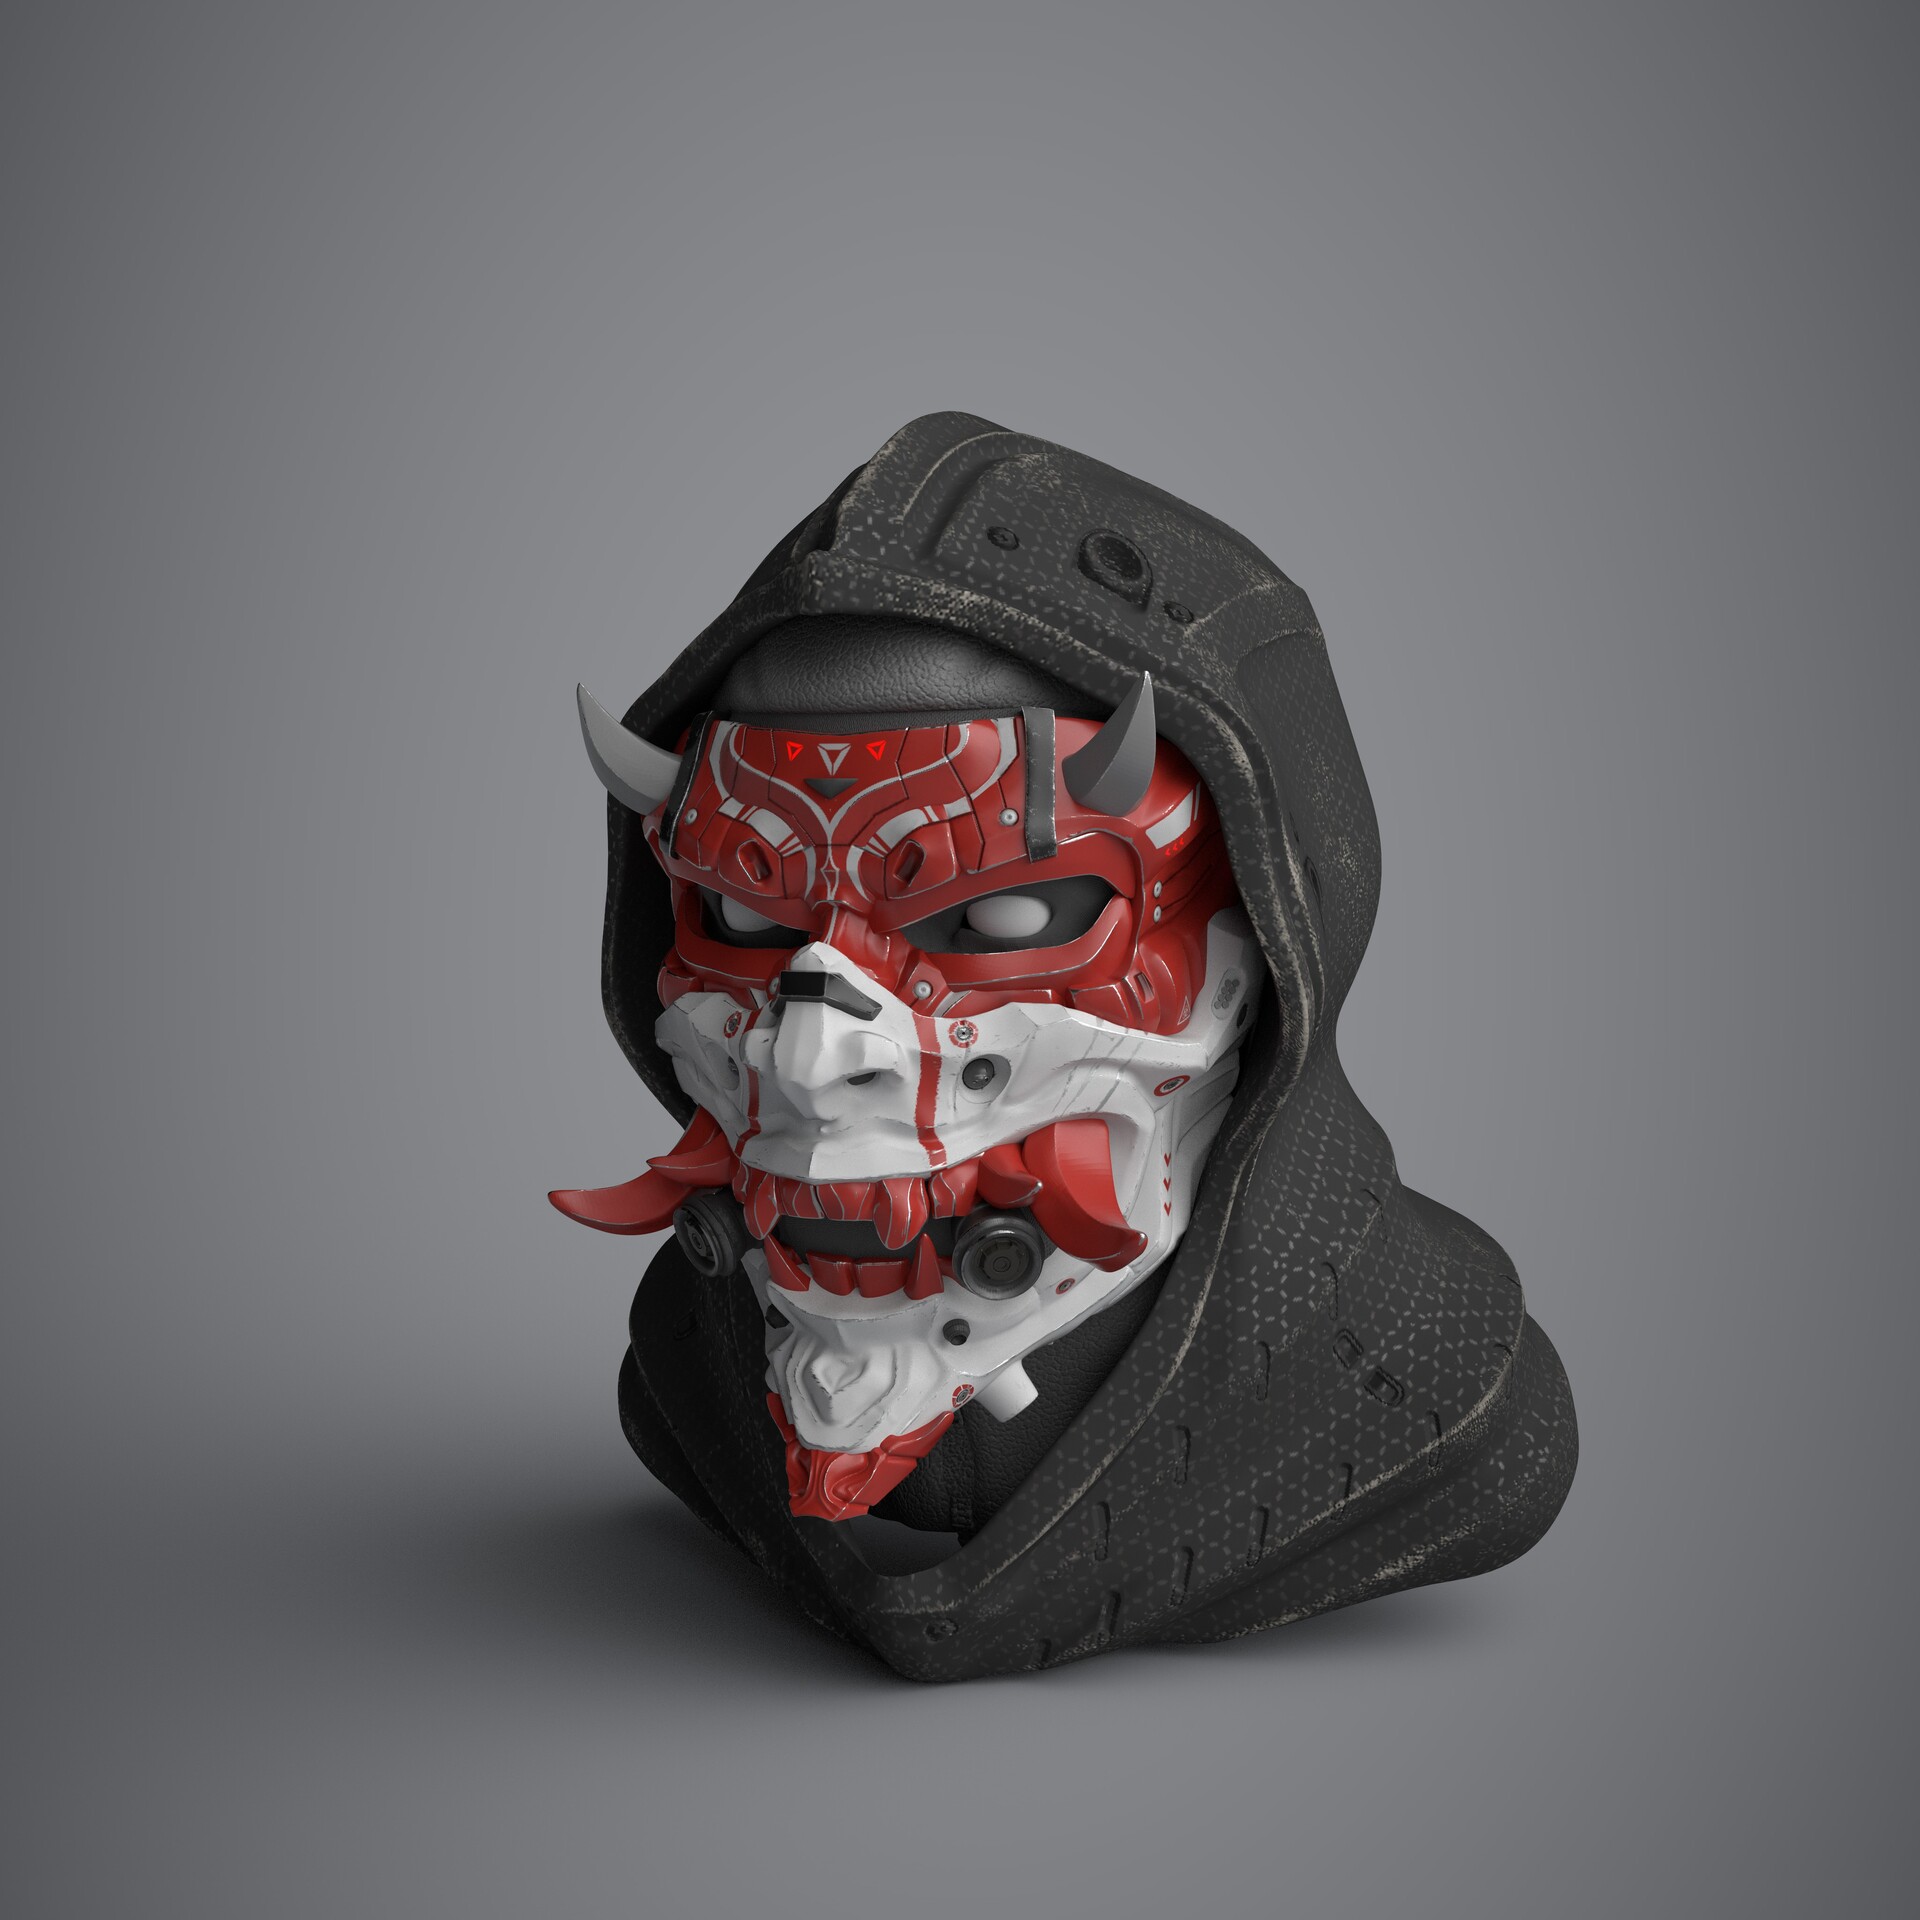 Geometri Motley Port ArtStation - Cyber Shinobi mask